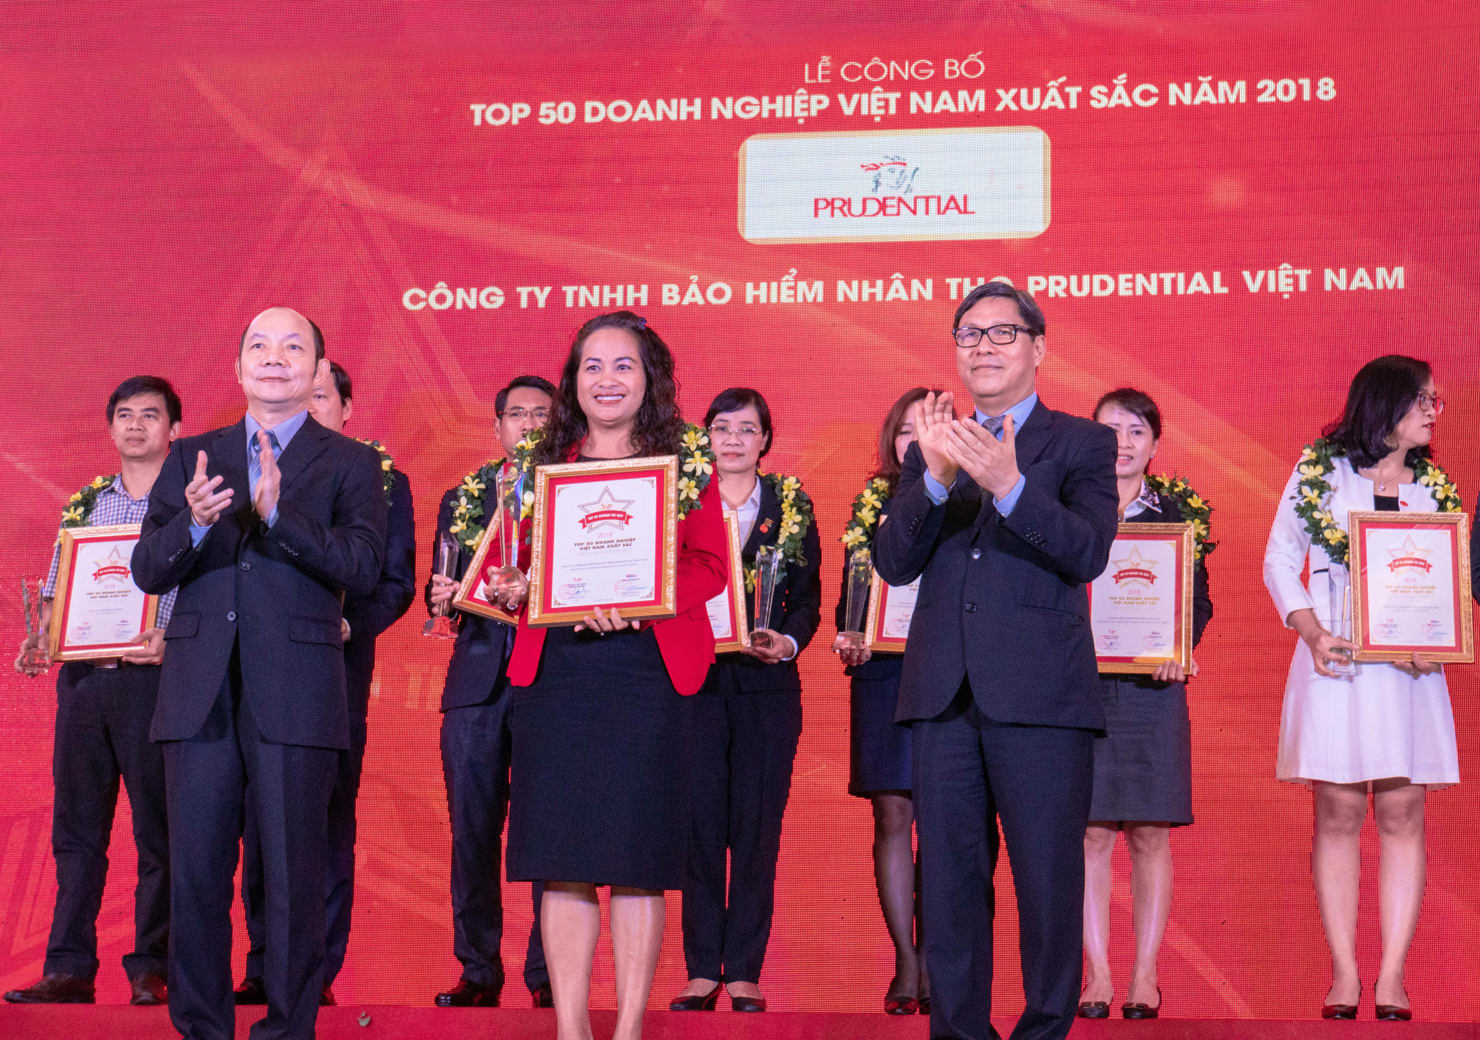 Prudential Việt Nam được vinh danh trong “Top 50 doanh nghiệp Việt Nam xuất sắc năm 2018”.